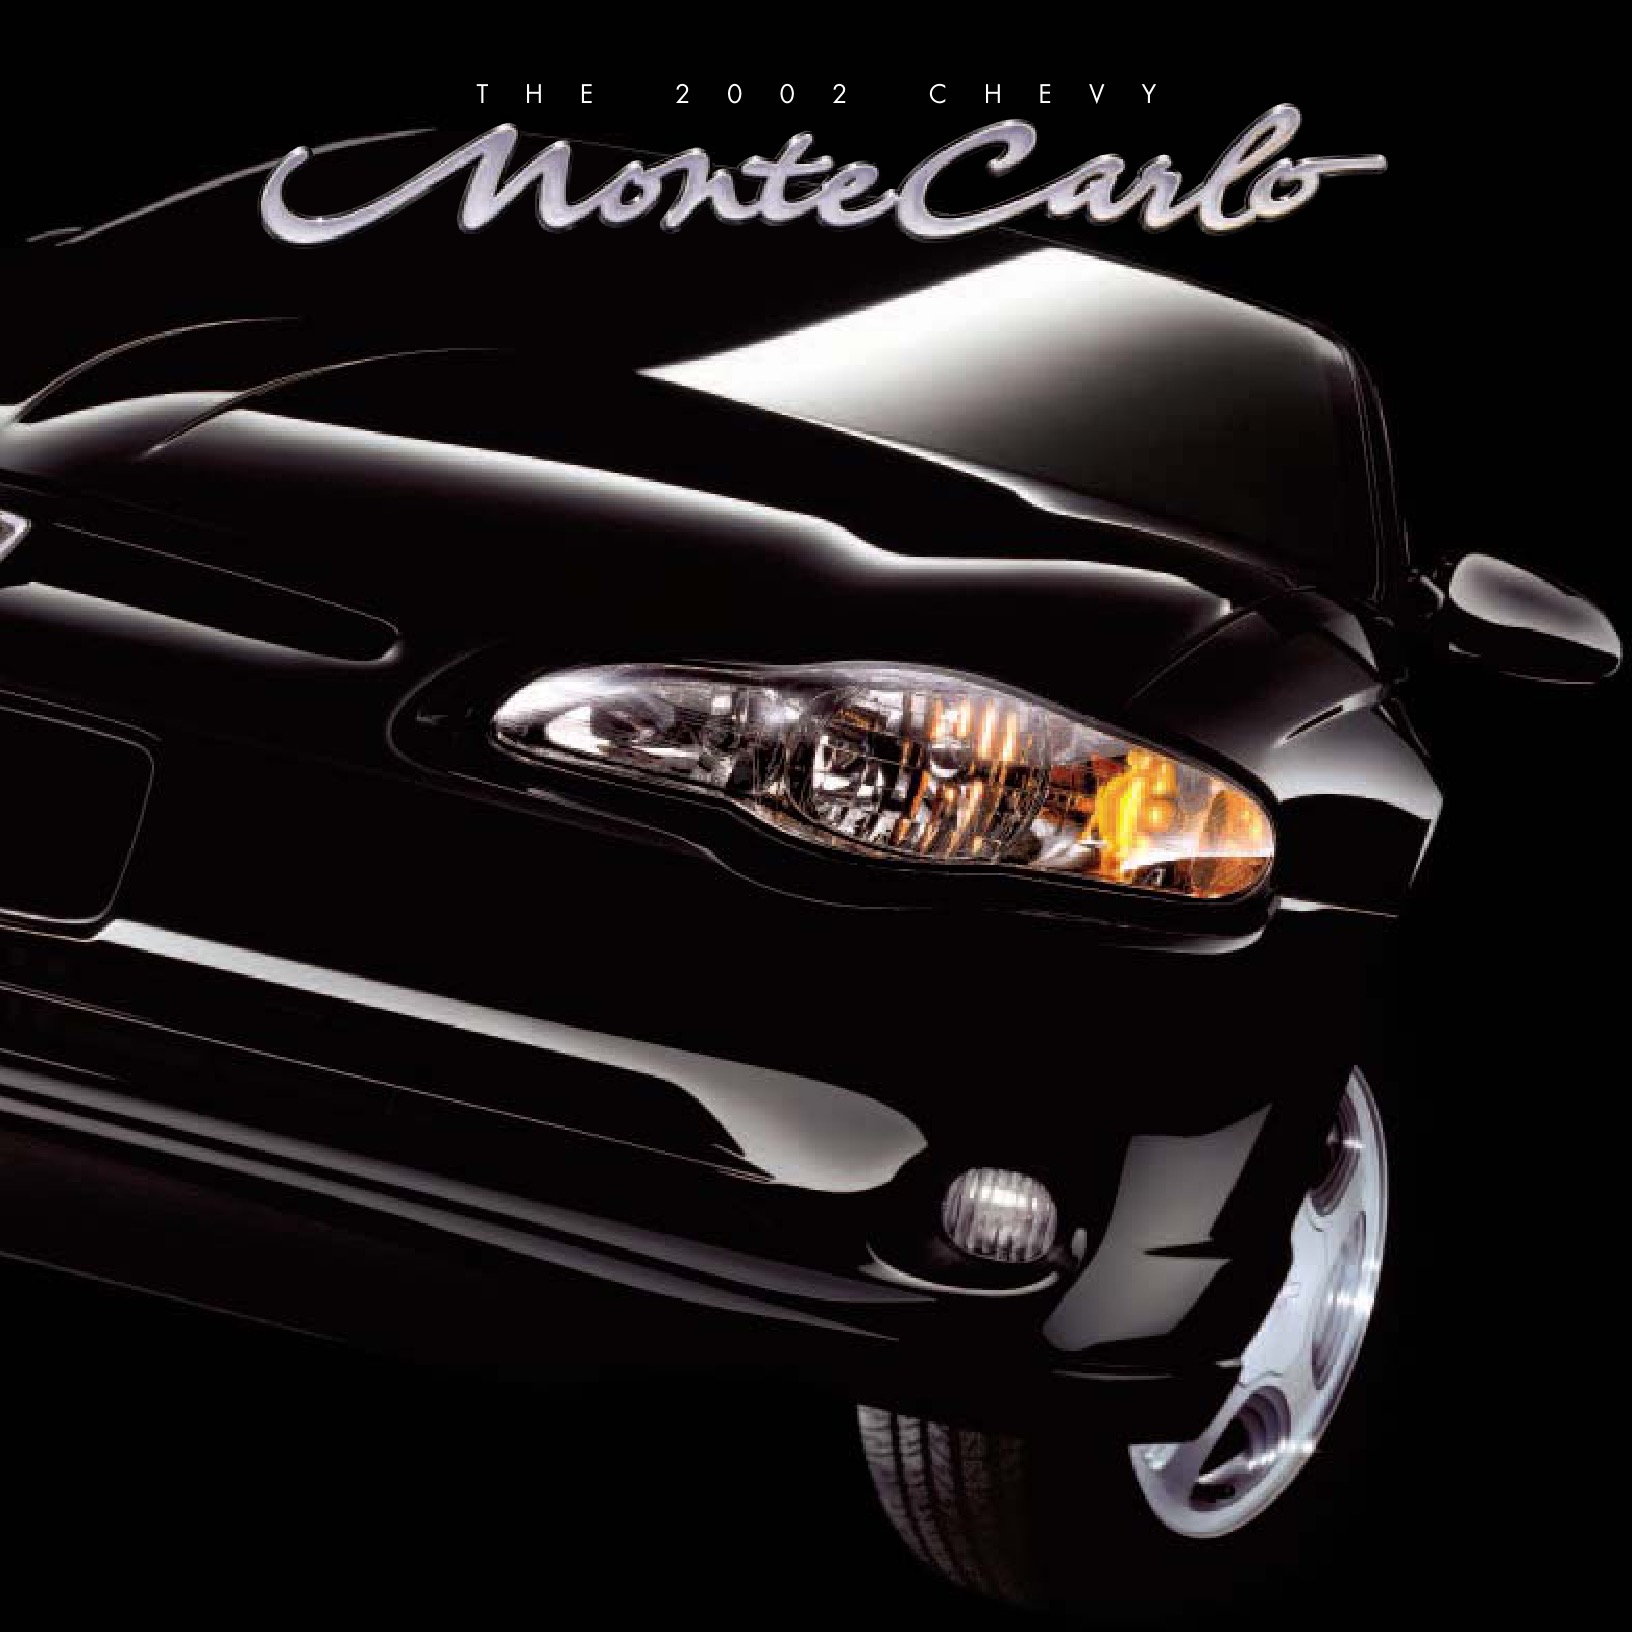 2002 Chevrolet Monte Carlo Brochure